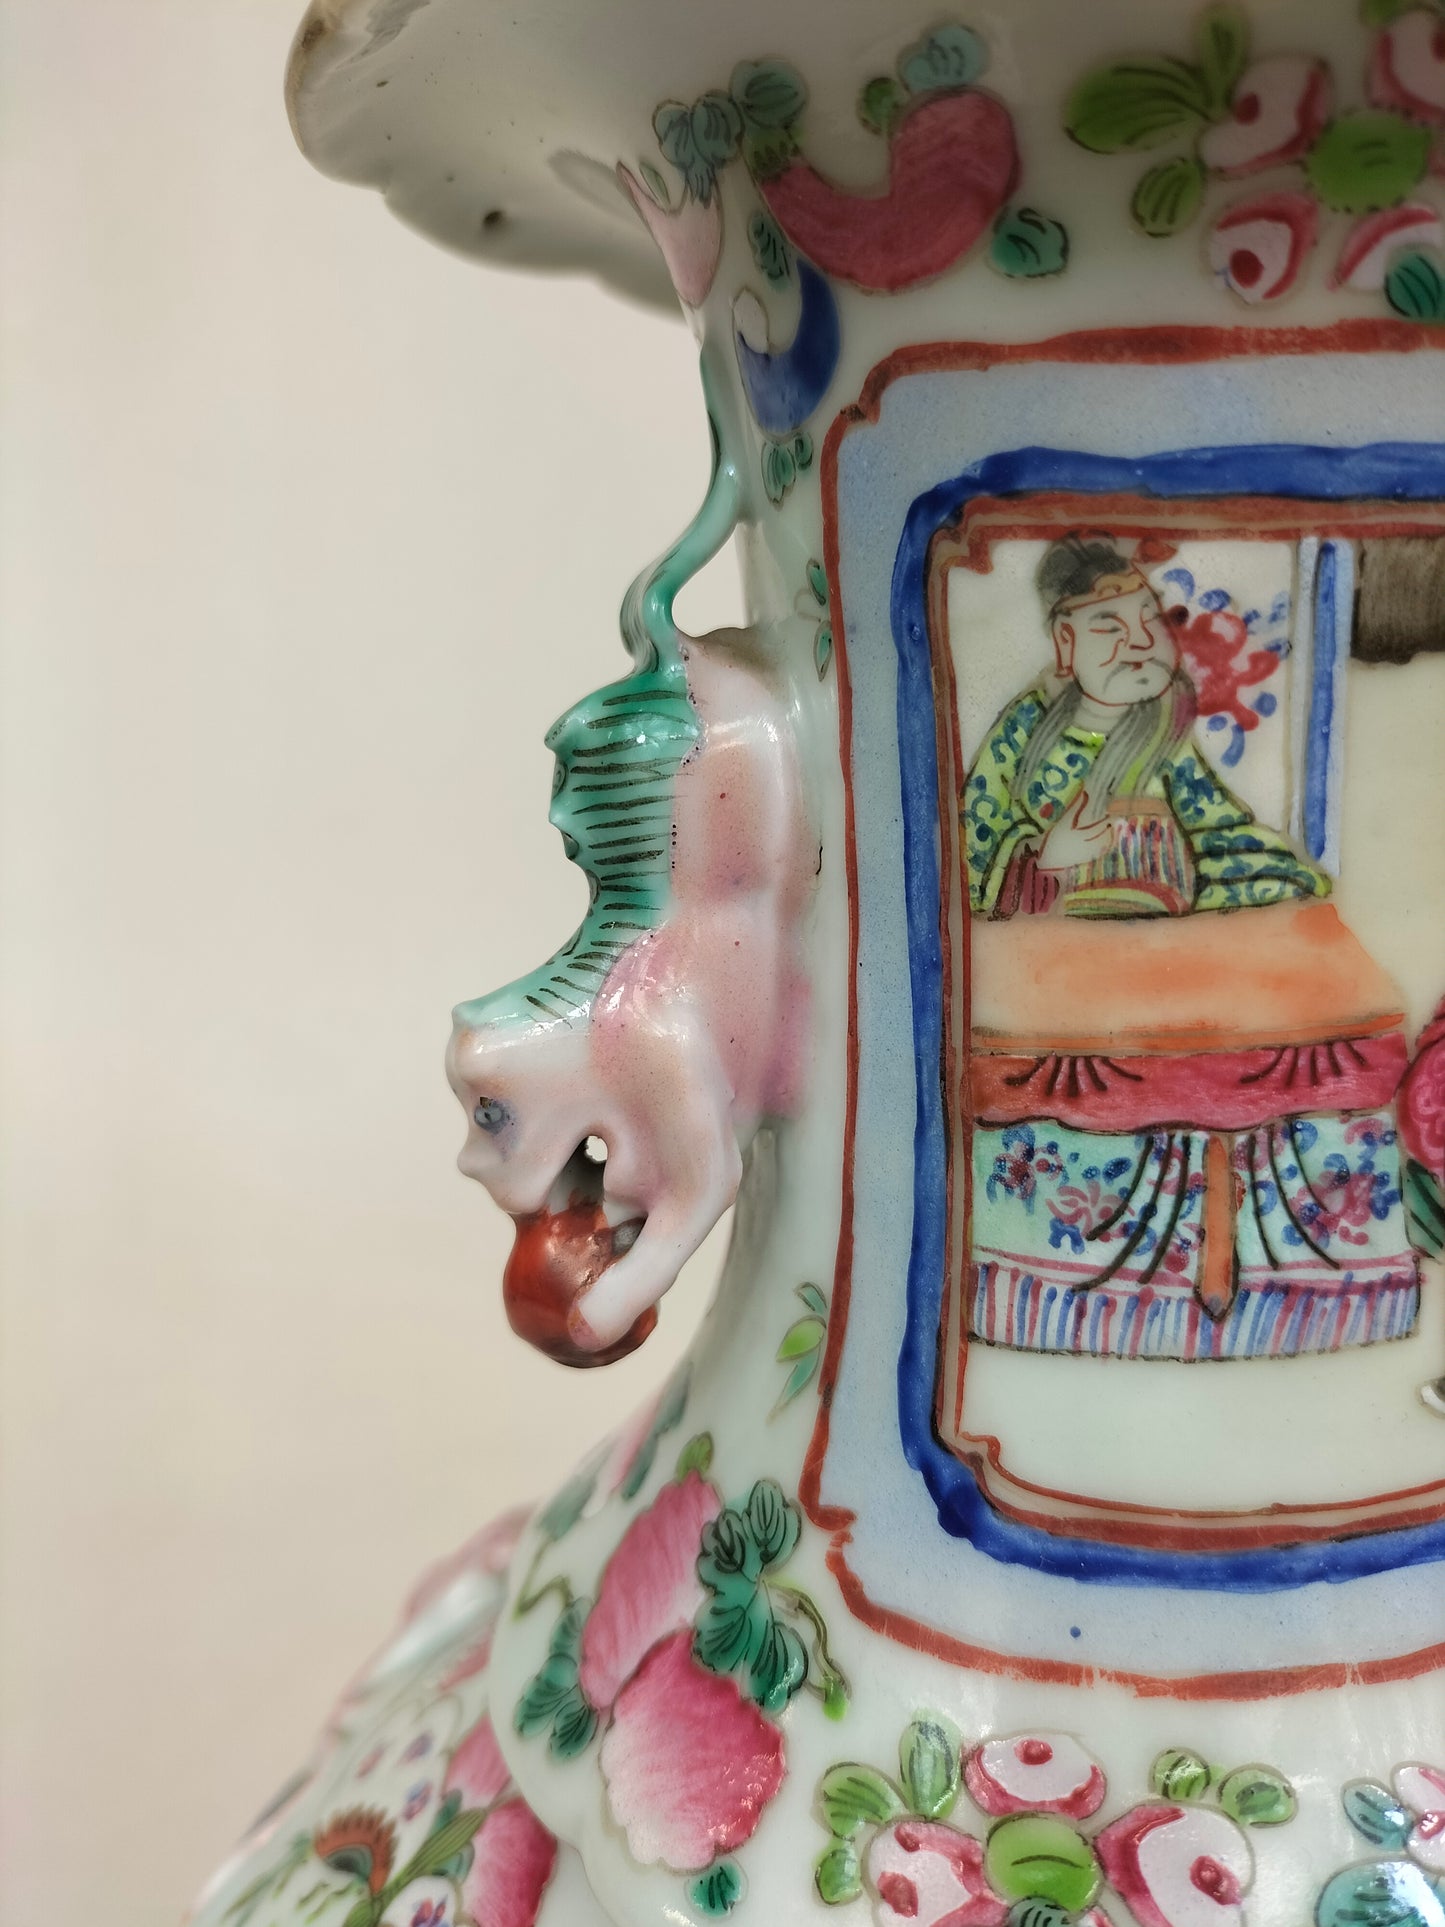 Antigo vaso de cantão chinês decorado com cena imperial // Dinastia Qing - século XIX